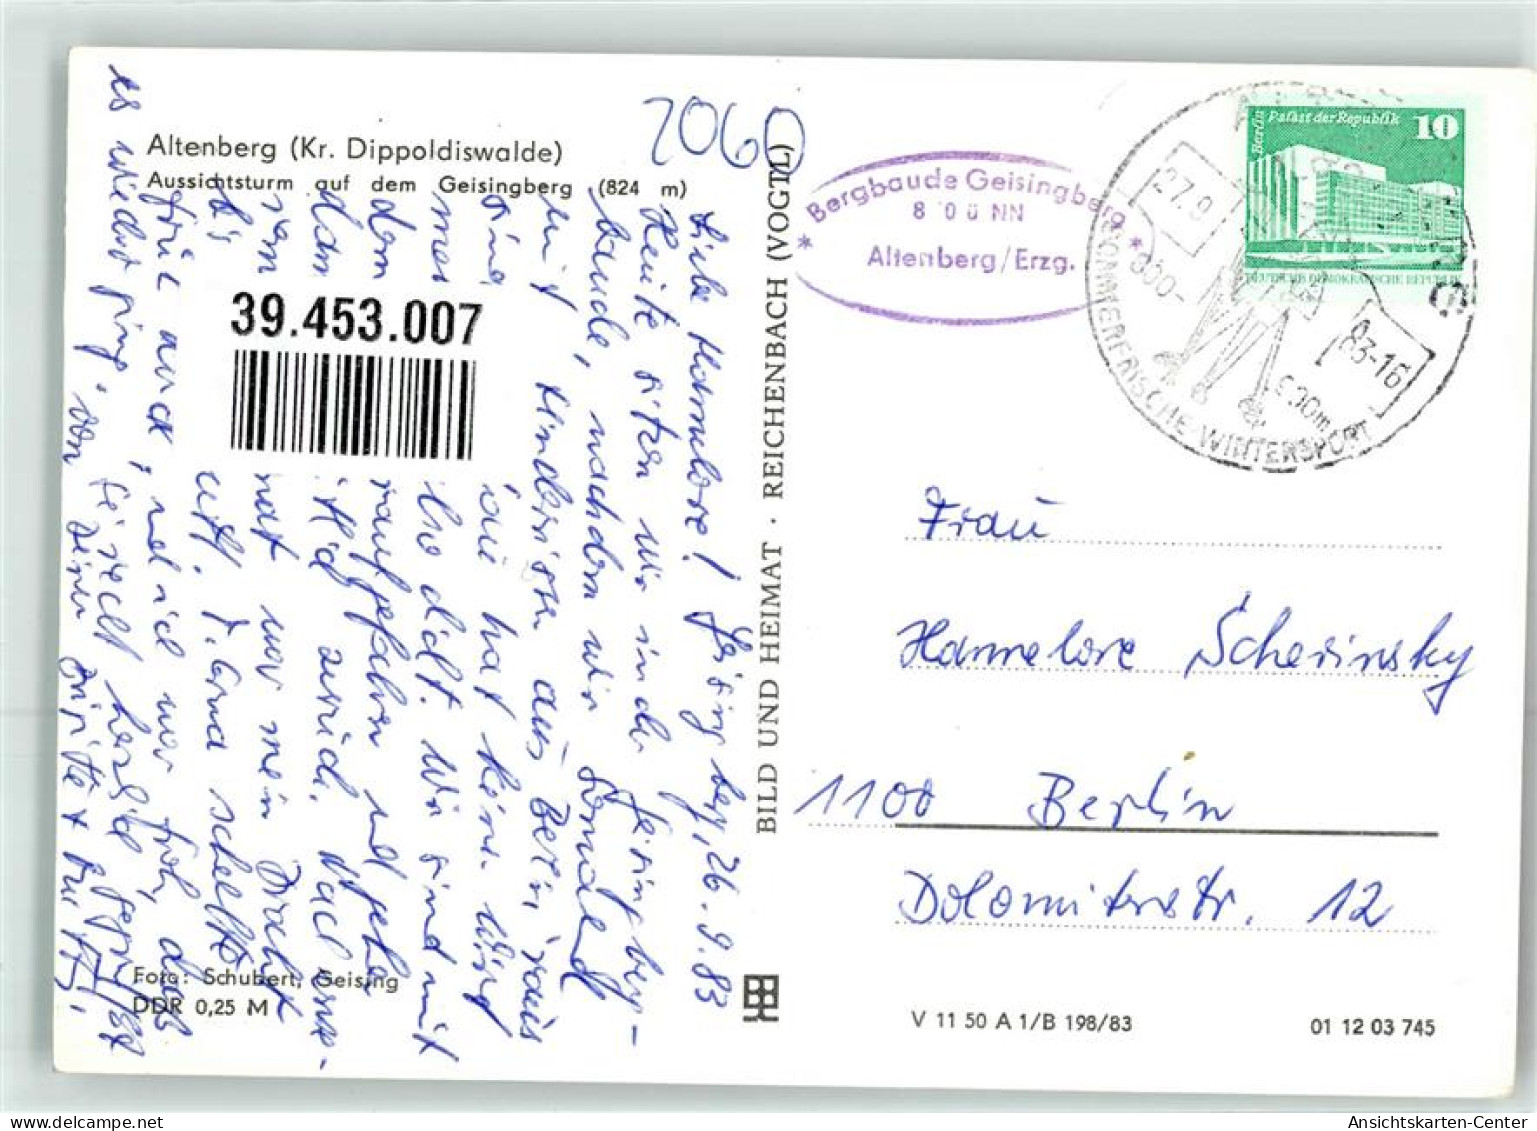 39453007 - Altenberg , Erzgeb - Altenberg